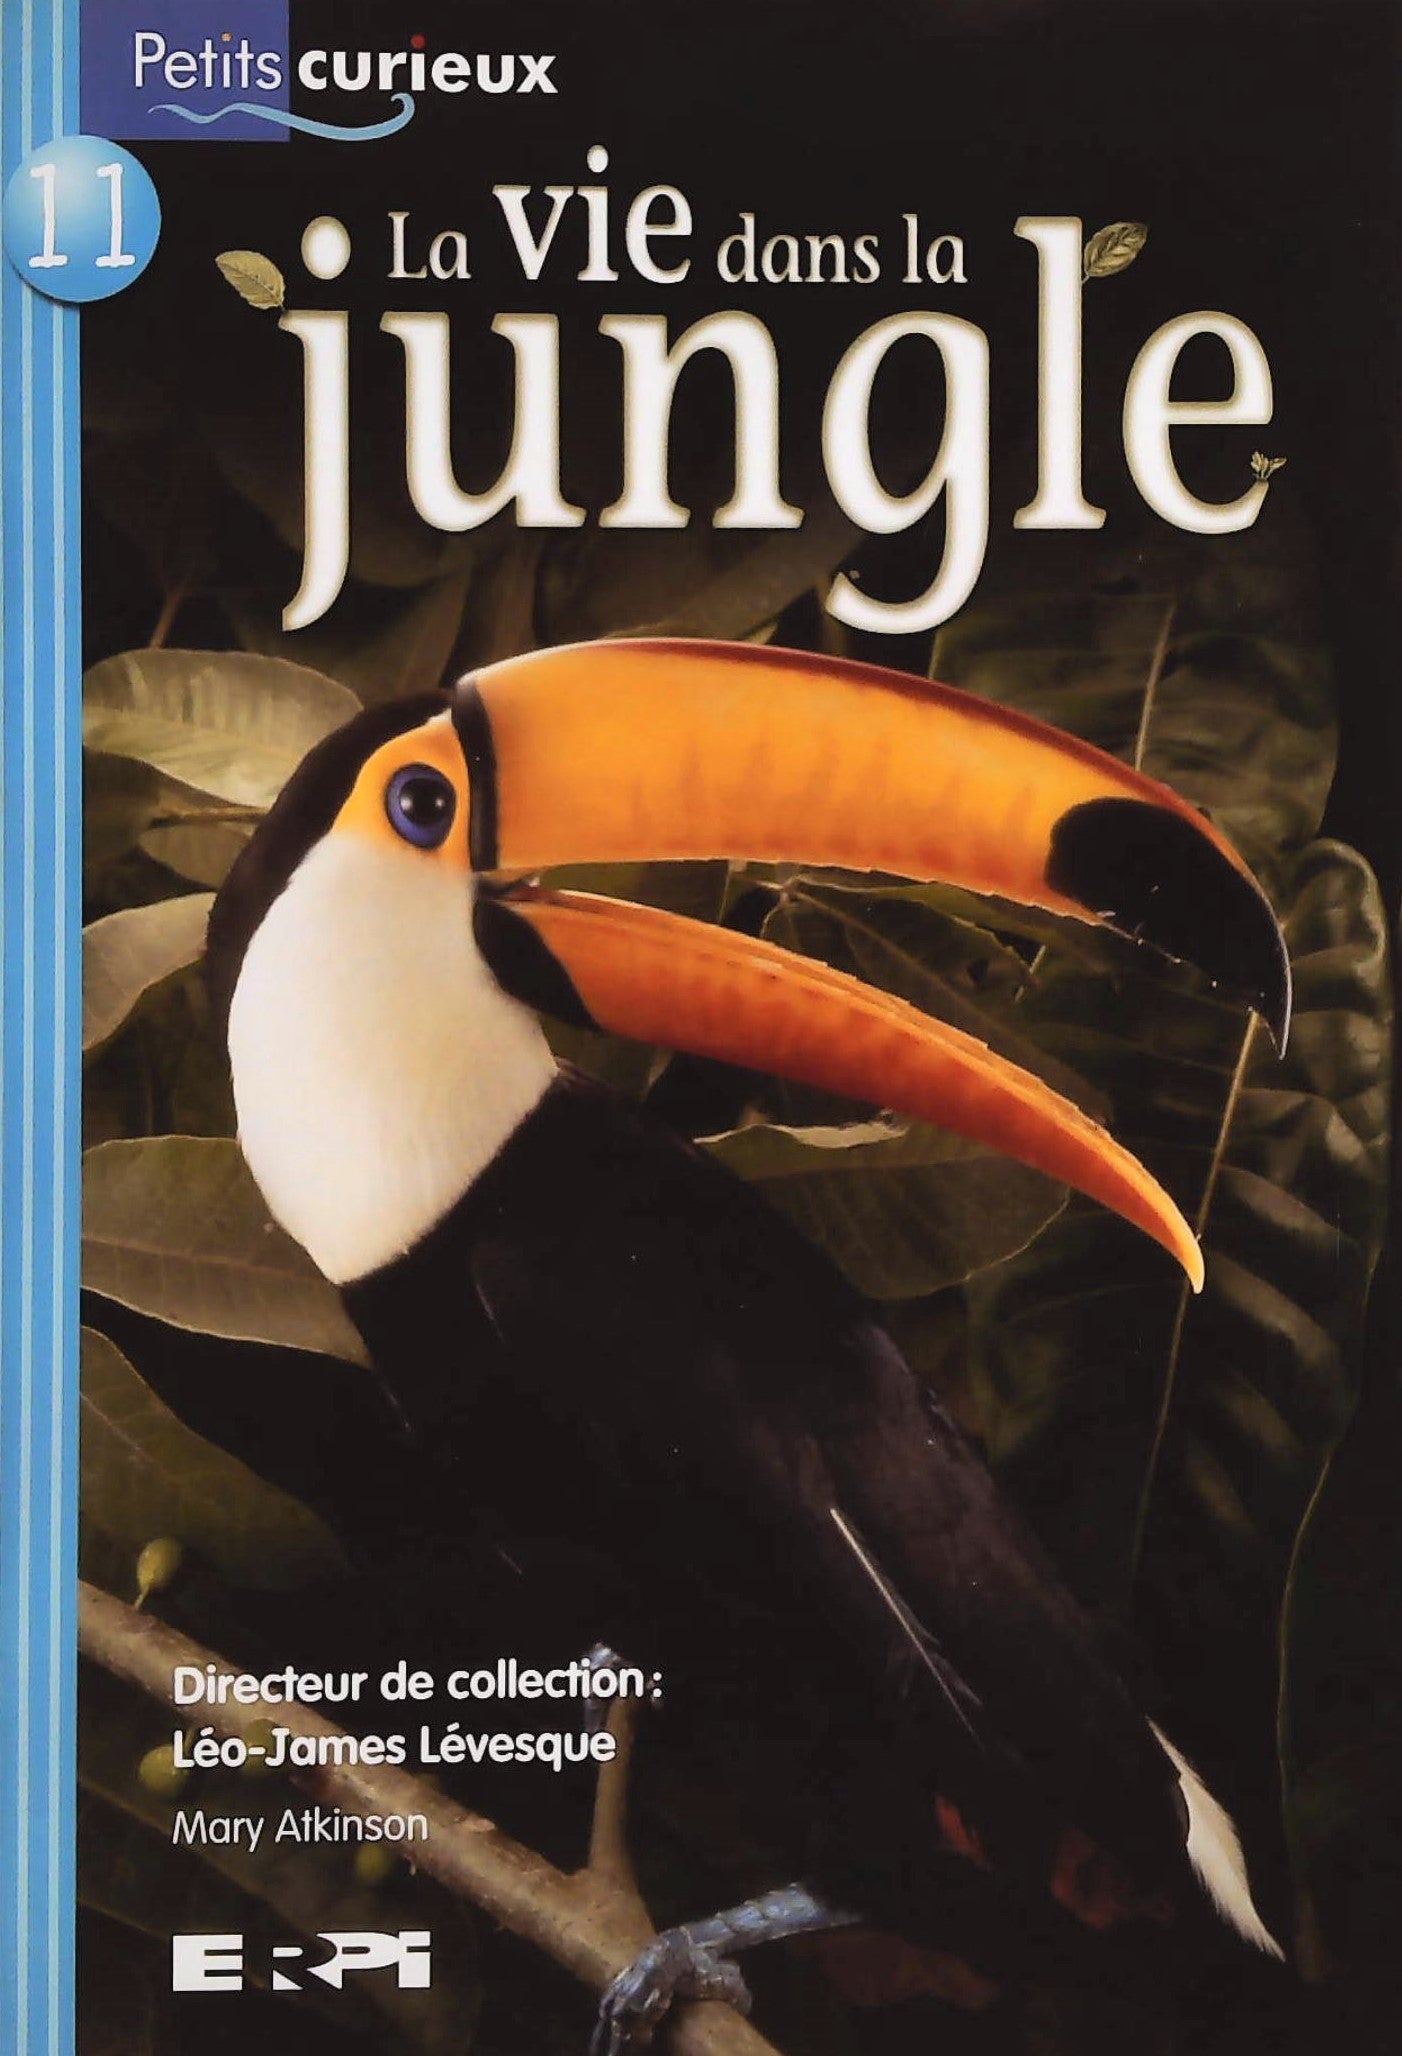 Livre ISBN 2761327330 Petits Curieux (Série turquoise) # 11 : La vie dans la jungle (Mary Atkinson)